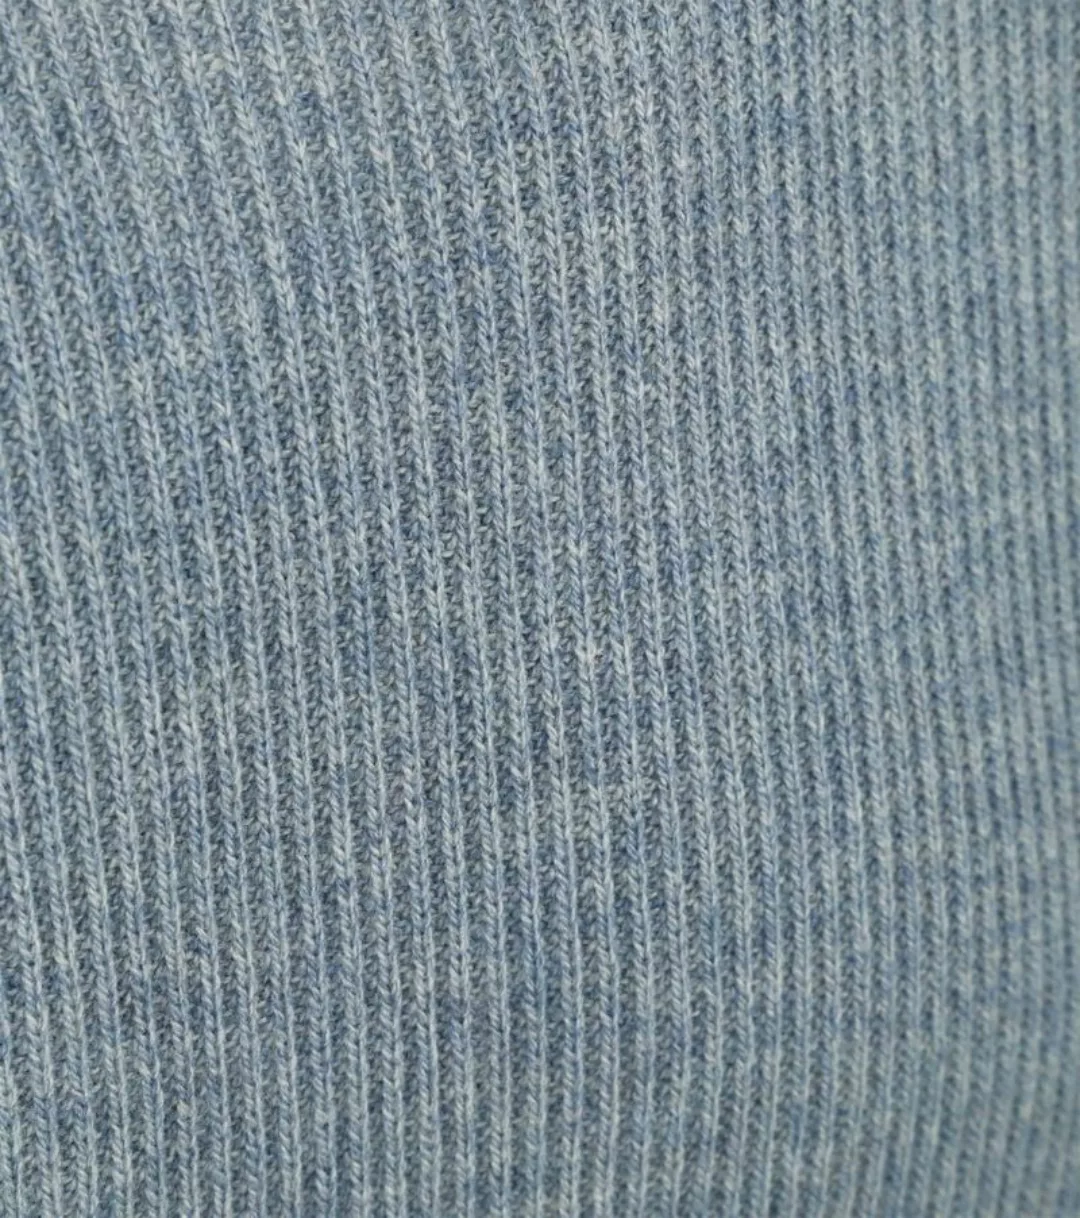 Profuomo Pullover Wolle Hellblau - Größe XL günstig online kaufen